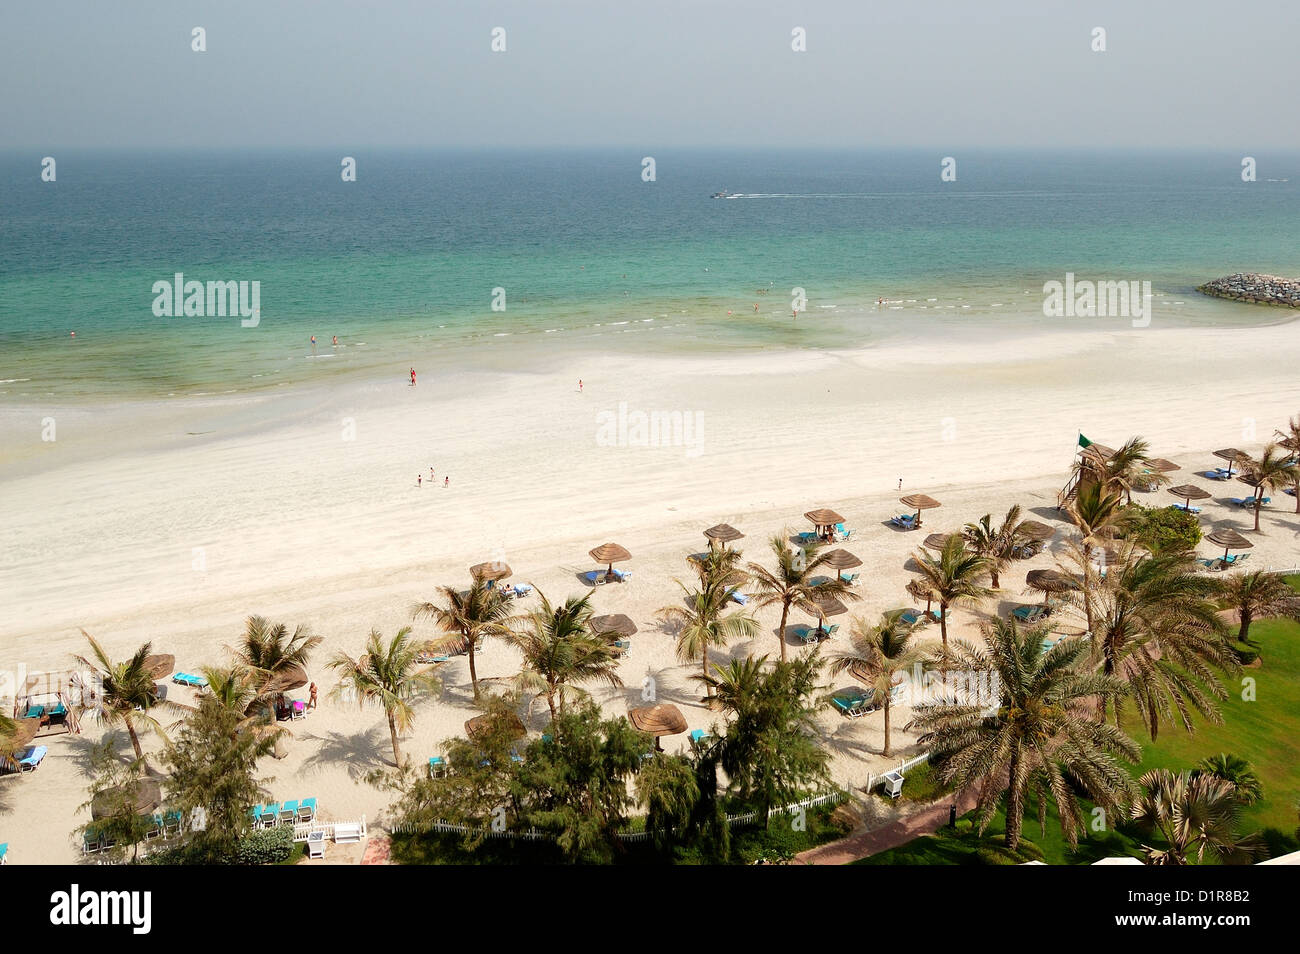 Plage et l'eau turquoise de l'hôtel de luxe, Ajman, Émirats arabes unis Banque D'Images